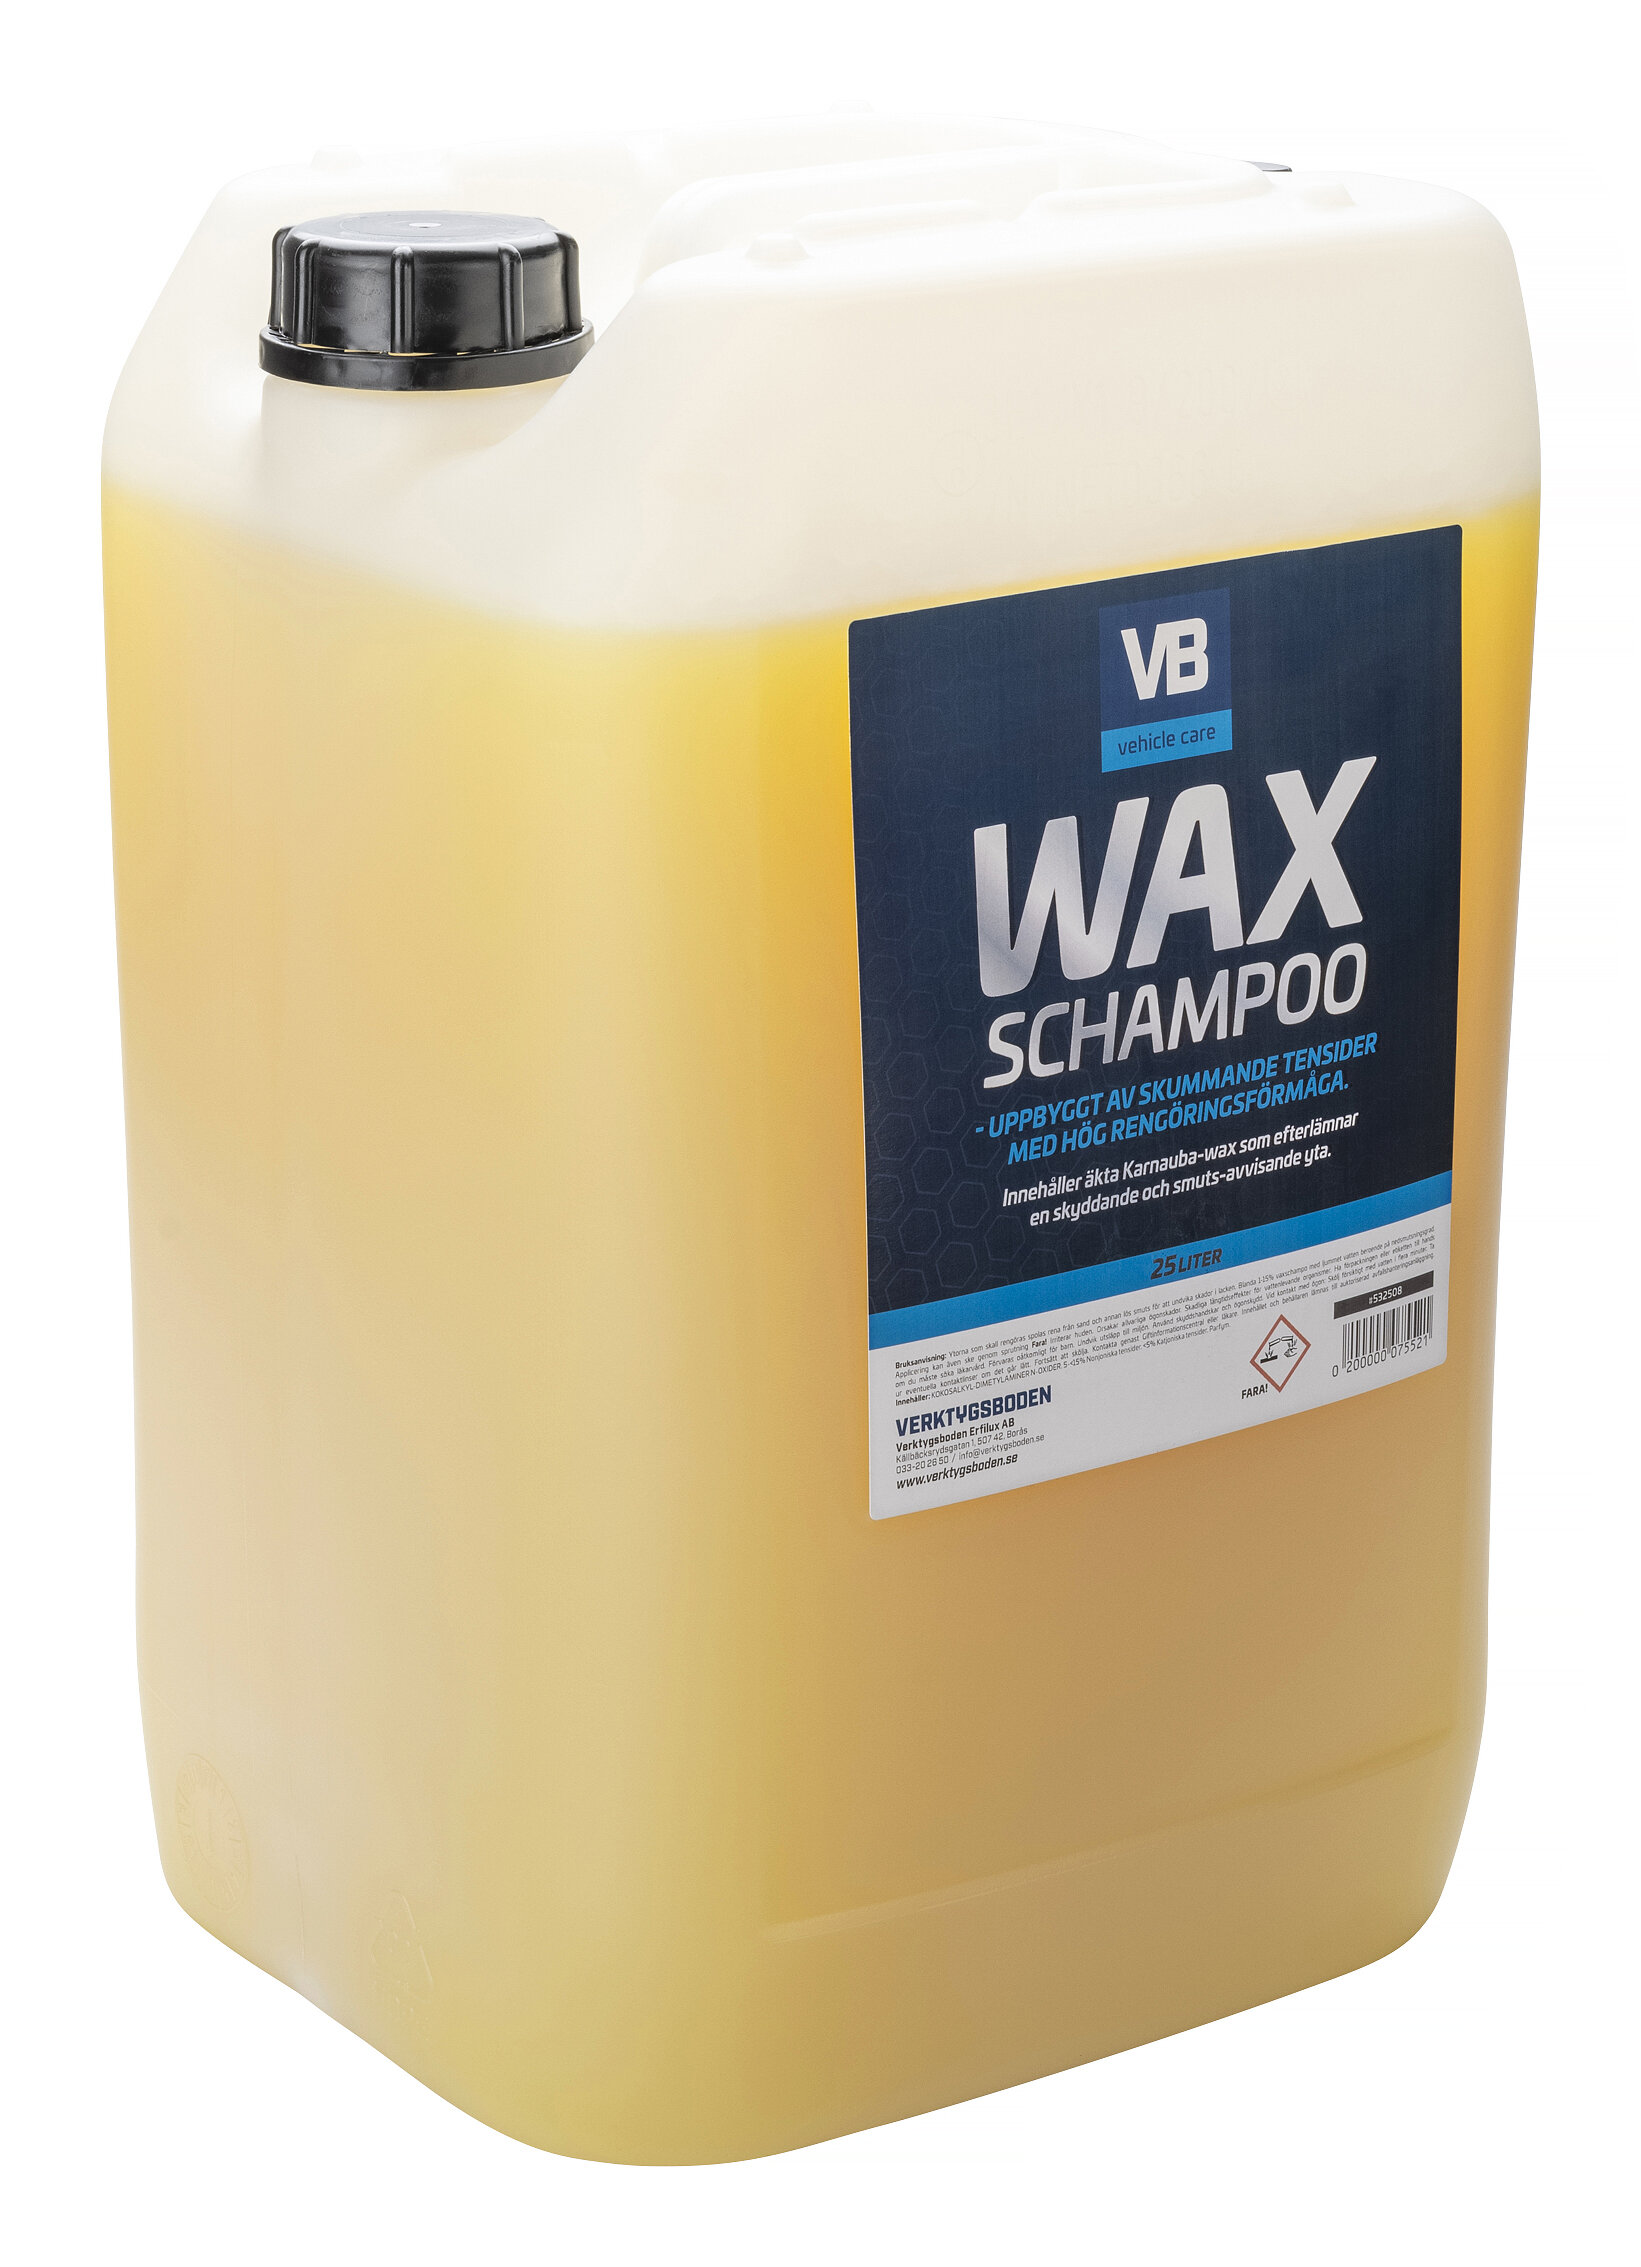 Waxschampo VB, 25 l